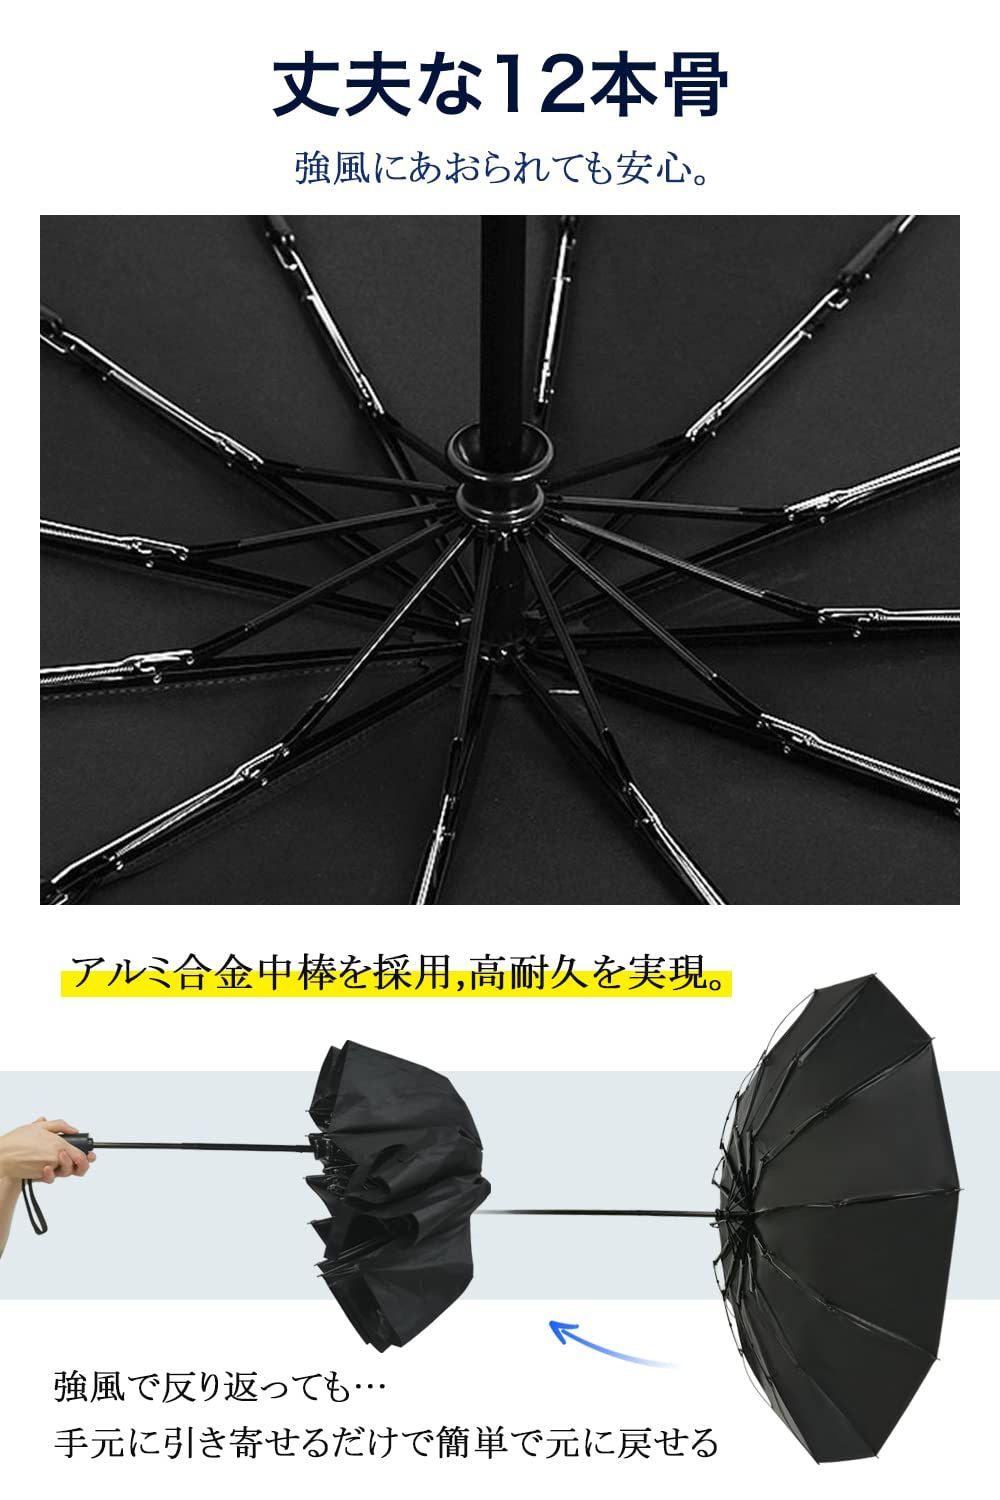 【色: ブラック】折りたたみ傘 12本骨 超大サイズワンタッチ 自動開閉 雨傘